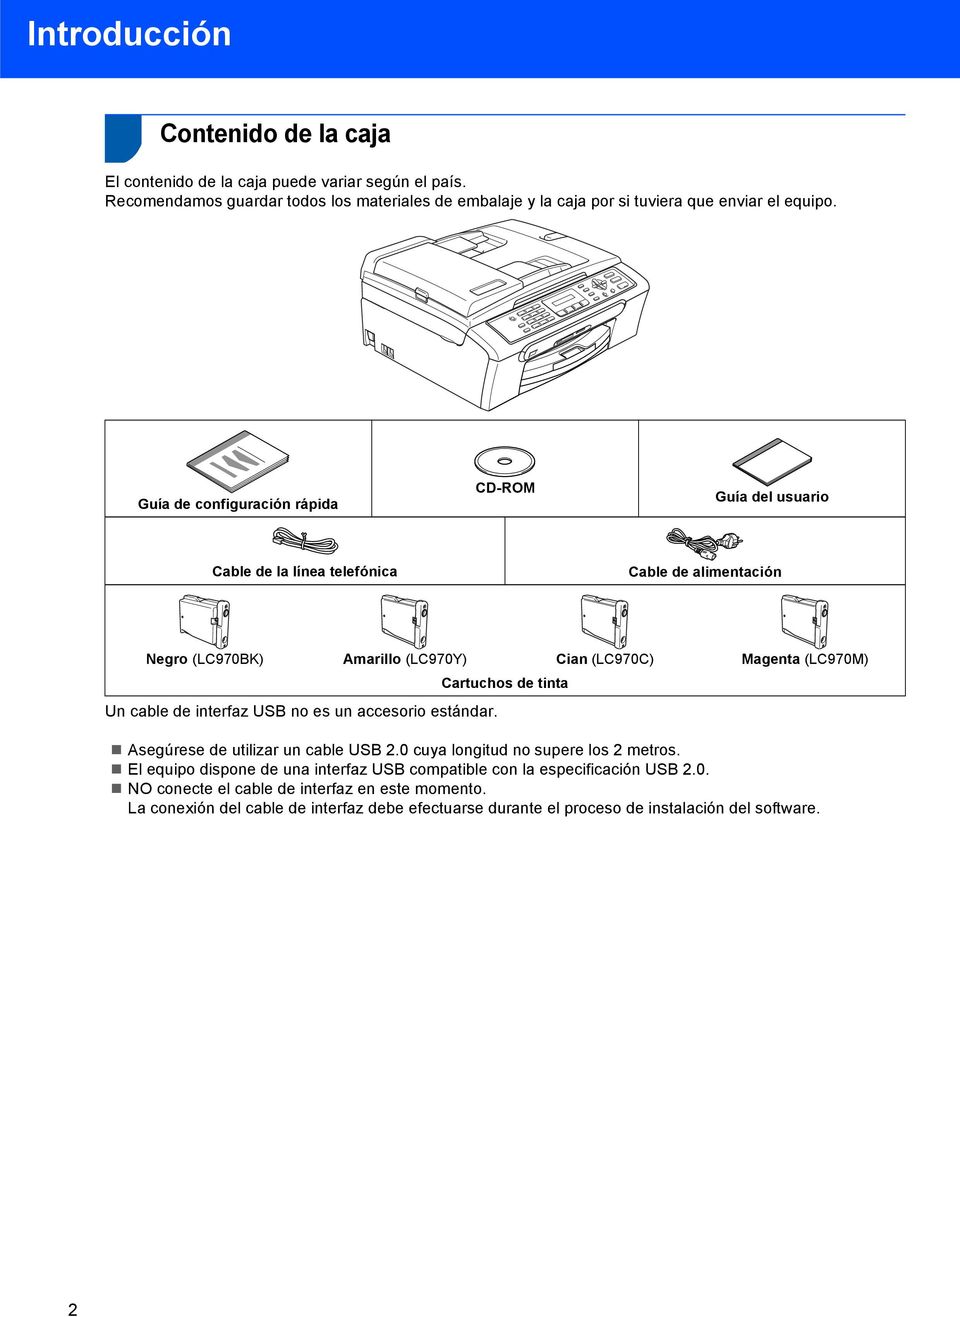 Guía de configuración rápida CD-ROM Guía del usuario Cable de la línea telefónica Cable de alimentación Negro (LC970BK) Amarillo (LC970Y) Cian (LC970C) Magenta (LC970M) Cartuchos de